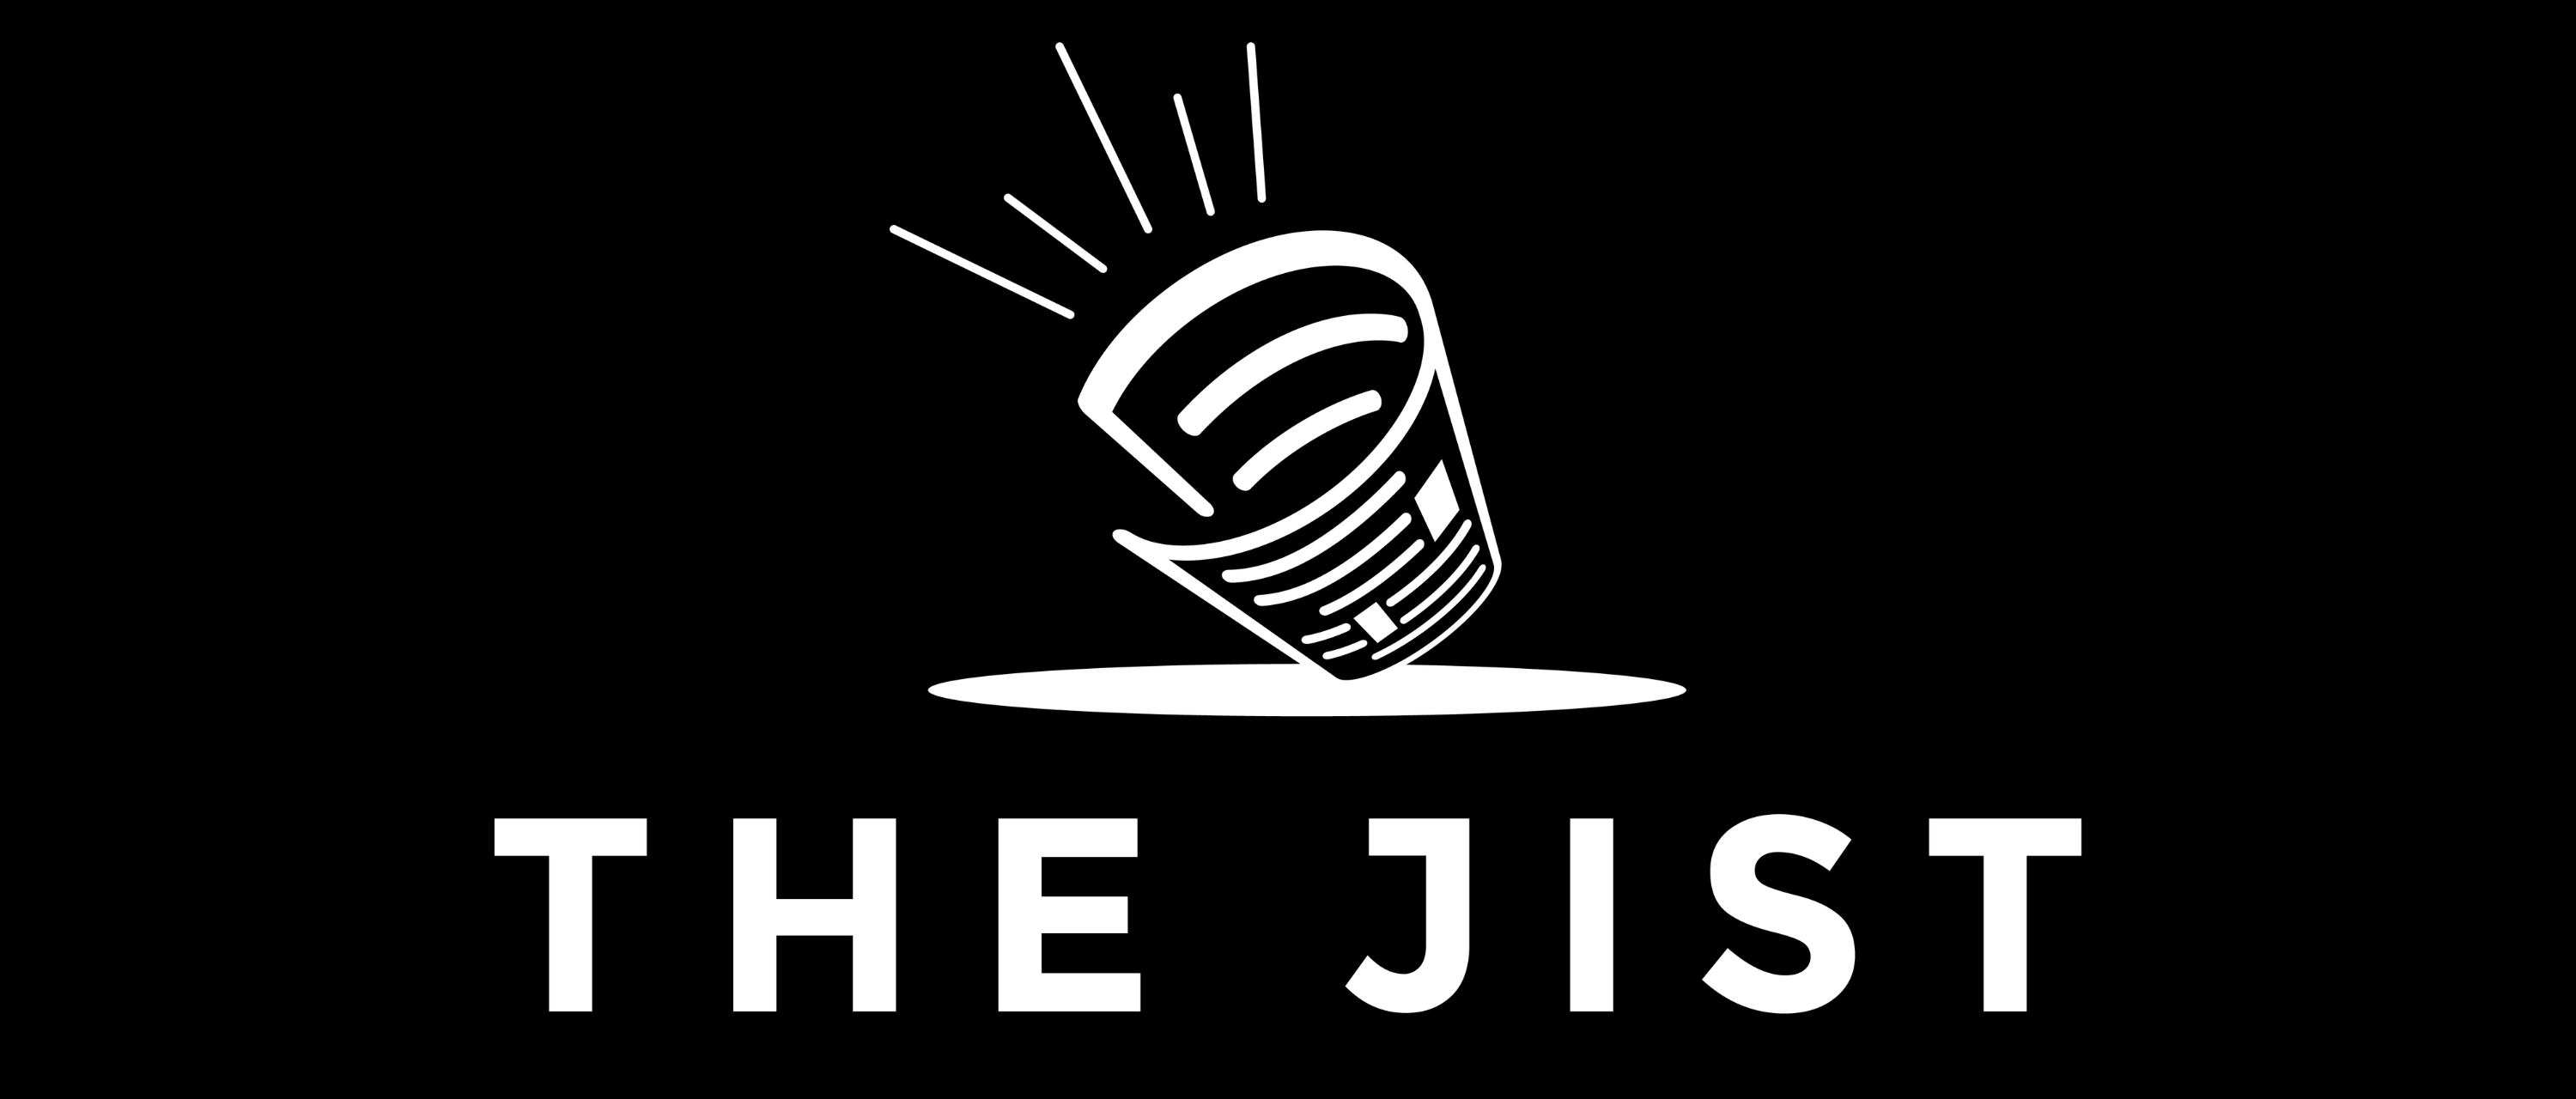 The Jist